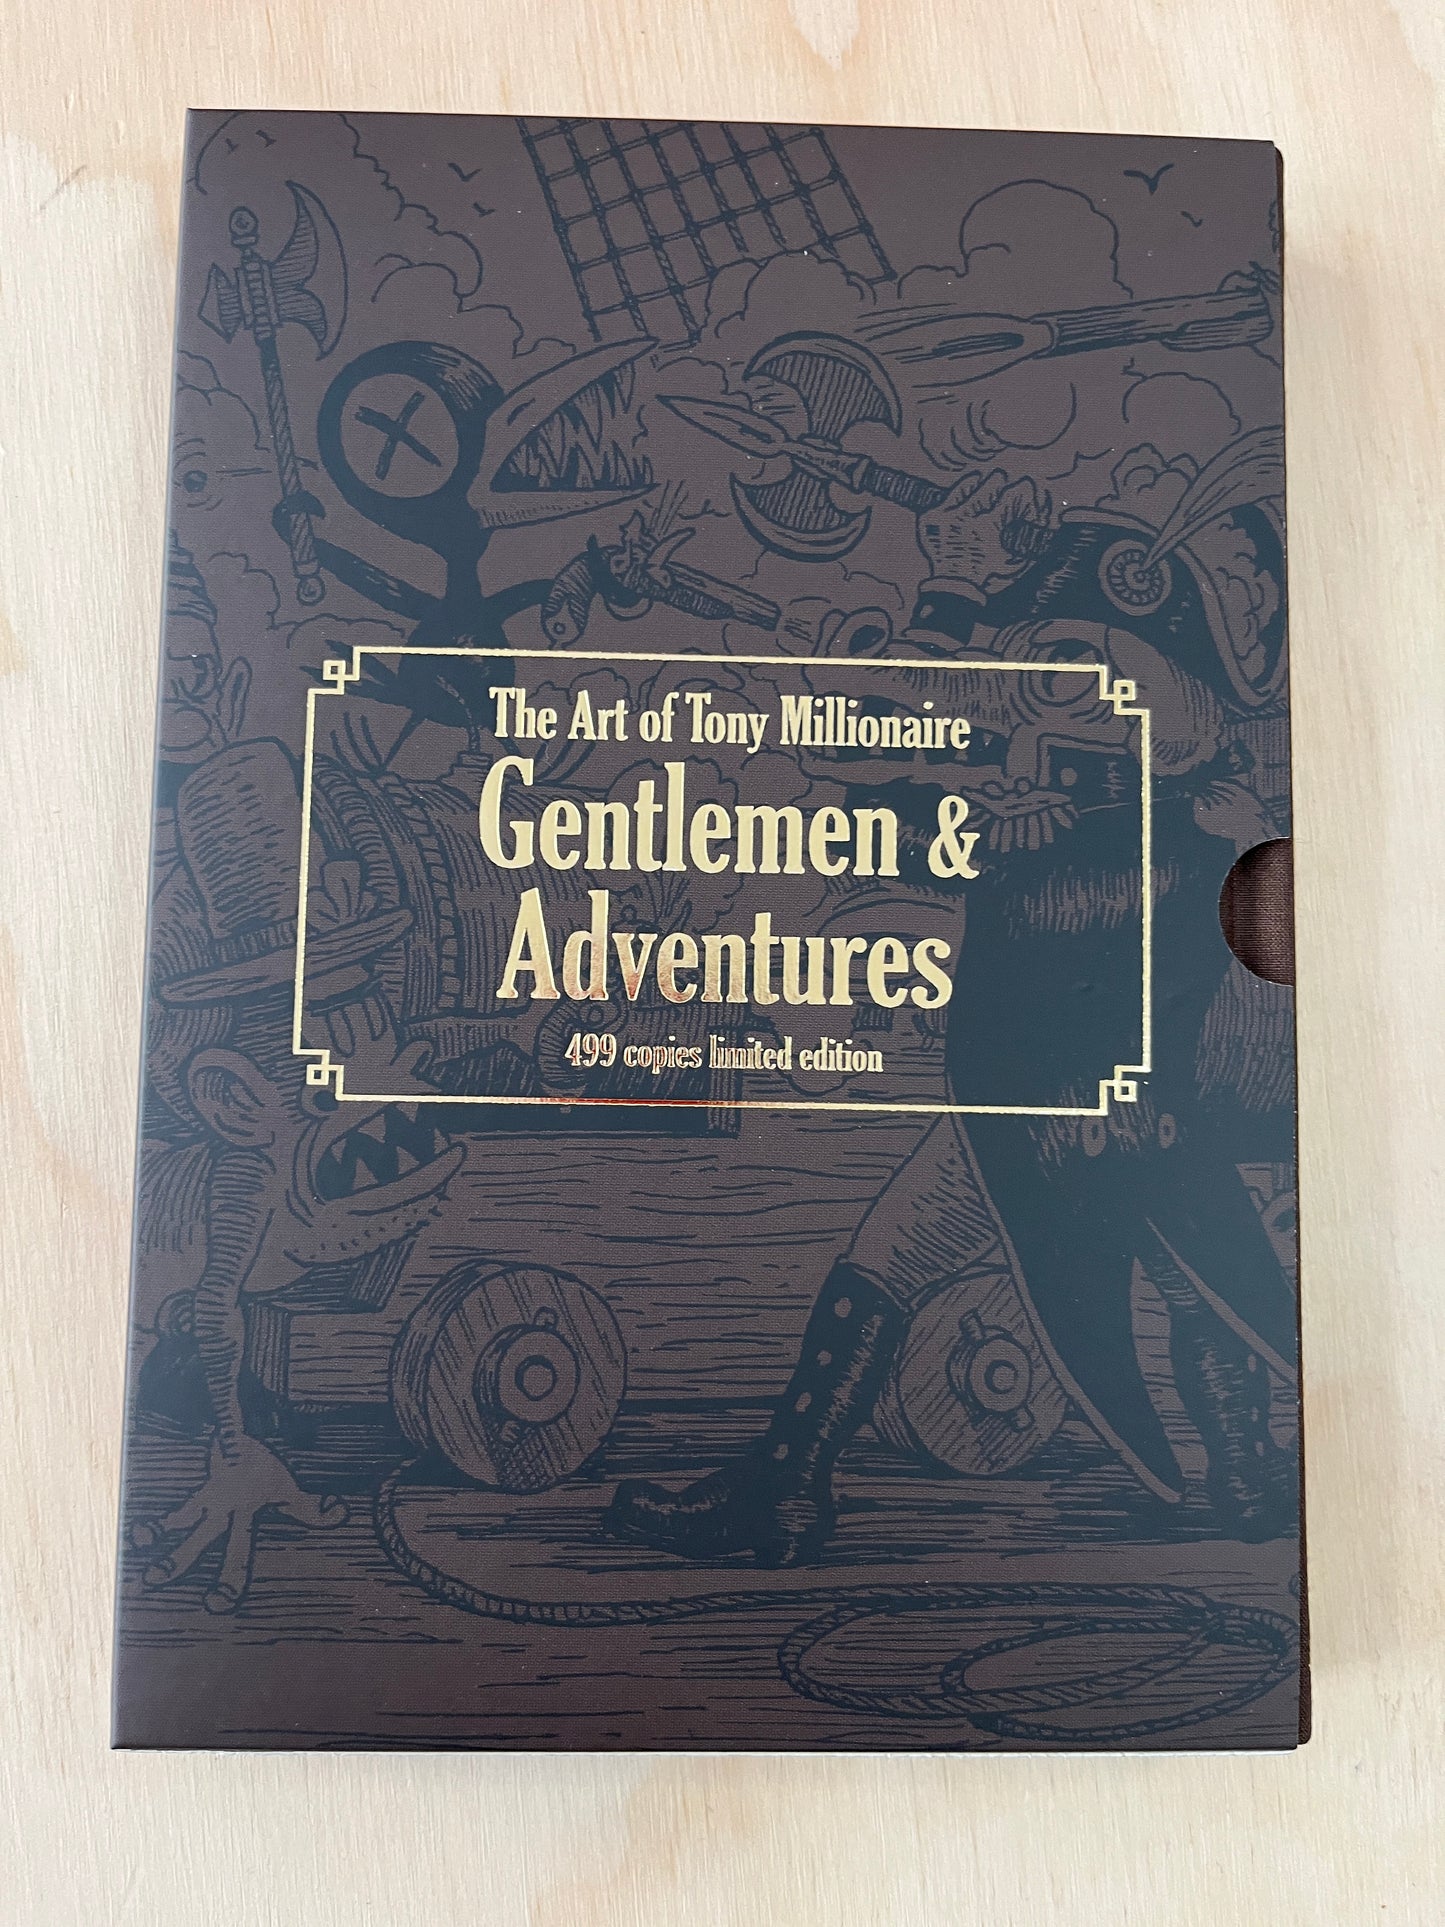 The Art of Tony Millionaire : Gentlemen & Adventures